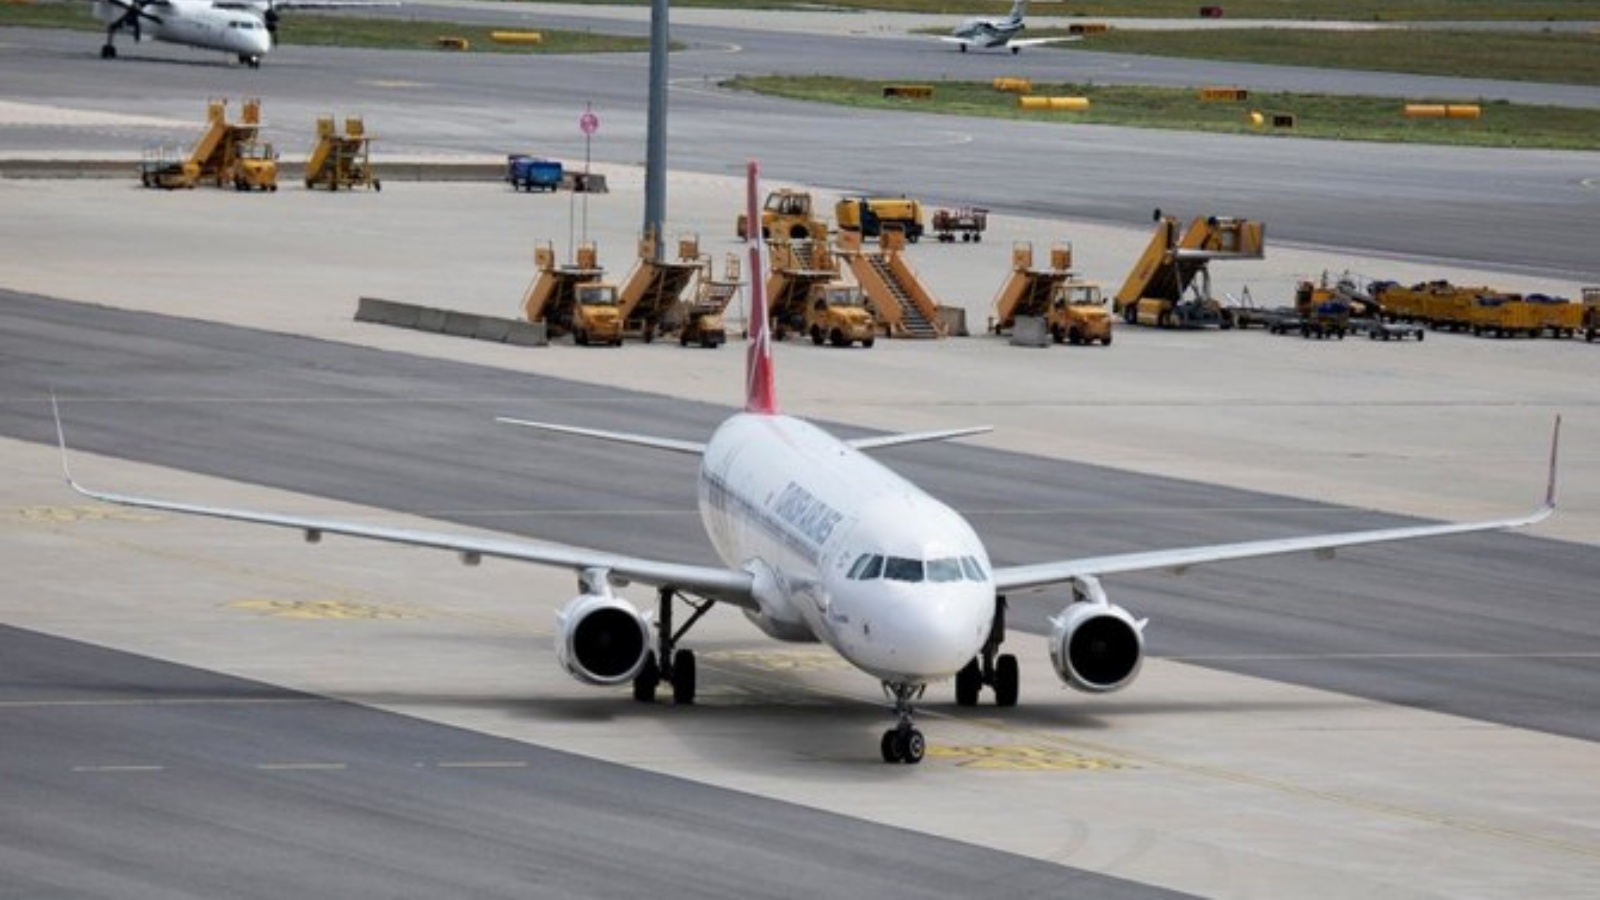 طائرة إيرباص A-321 تابعة للخطوط الجوية التركية تصل إلى مطار فيينا الدولي في 4 آب/أغسطس 2021، وسط جائحة فيروس كورونا كوفيد19.